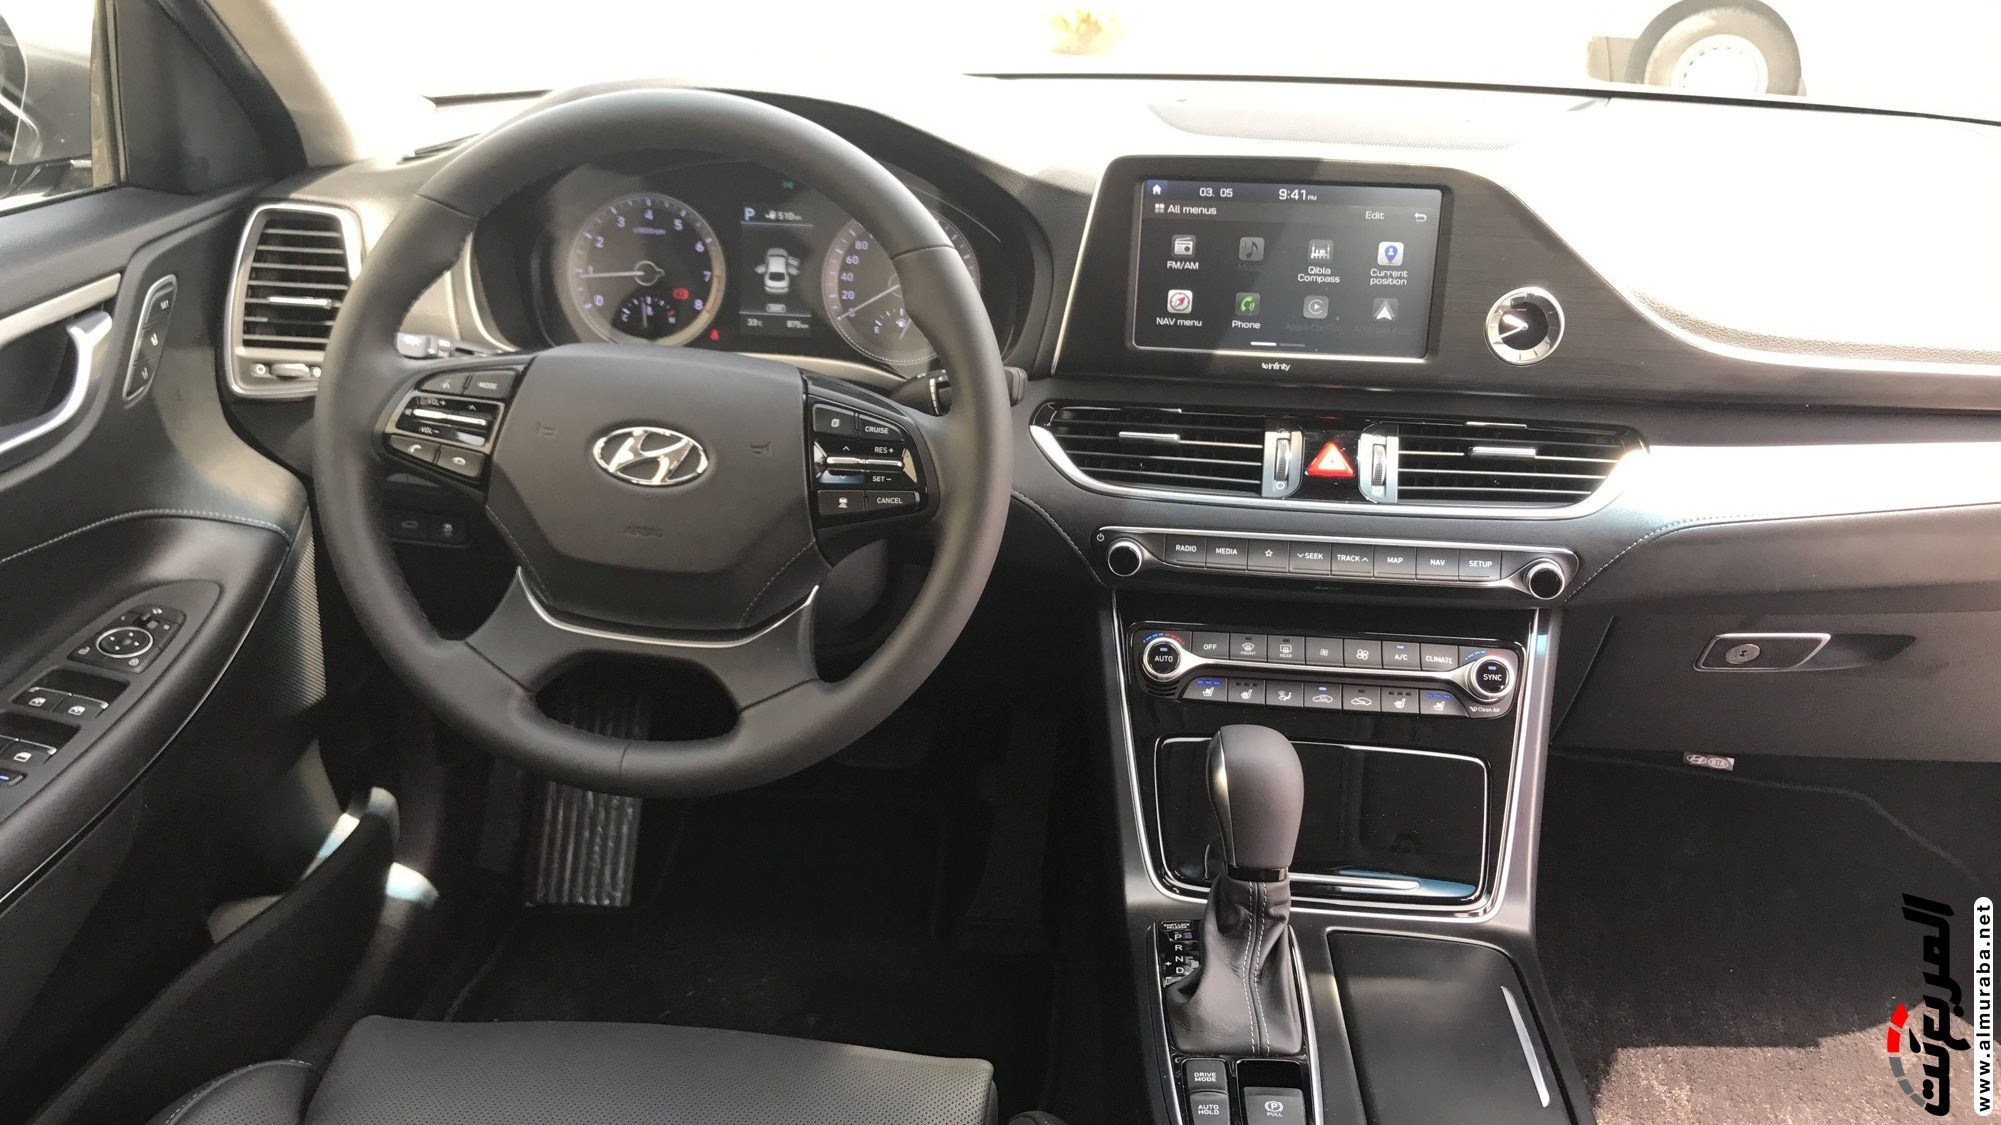 هيونداي ازيرا 2018 الشكل الجديد كلياً "تقرير وفيديو وصور ومواصفات واسعار" Hyundai Azera 27